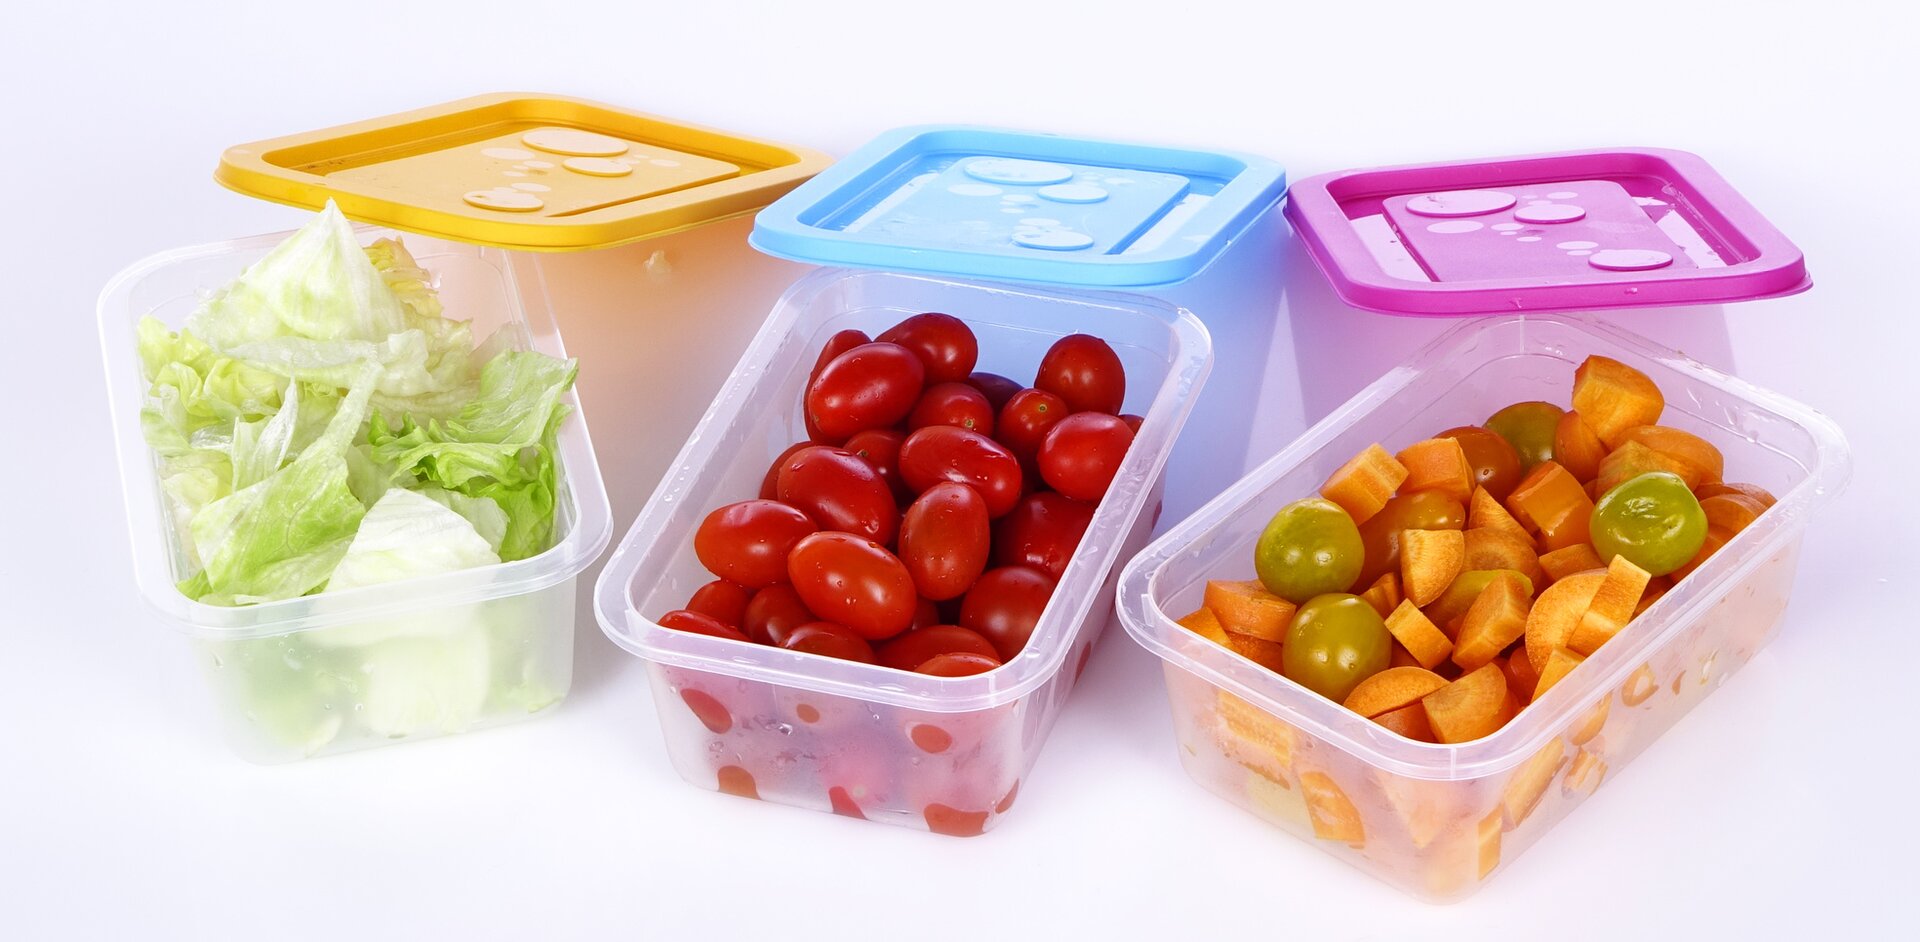 Fotografia przedstawia pokrojone surowe warzywa (sałatę, pomidory i marchew) umieszczone w plastikowych pojemnikach na żywność.